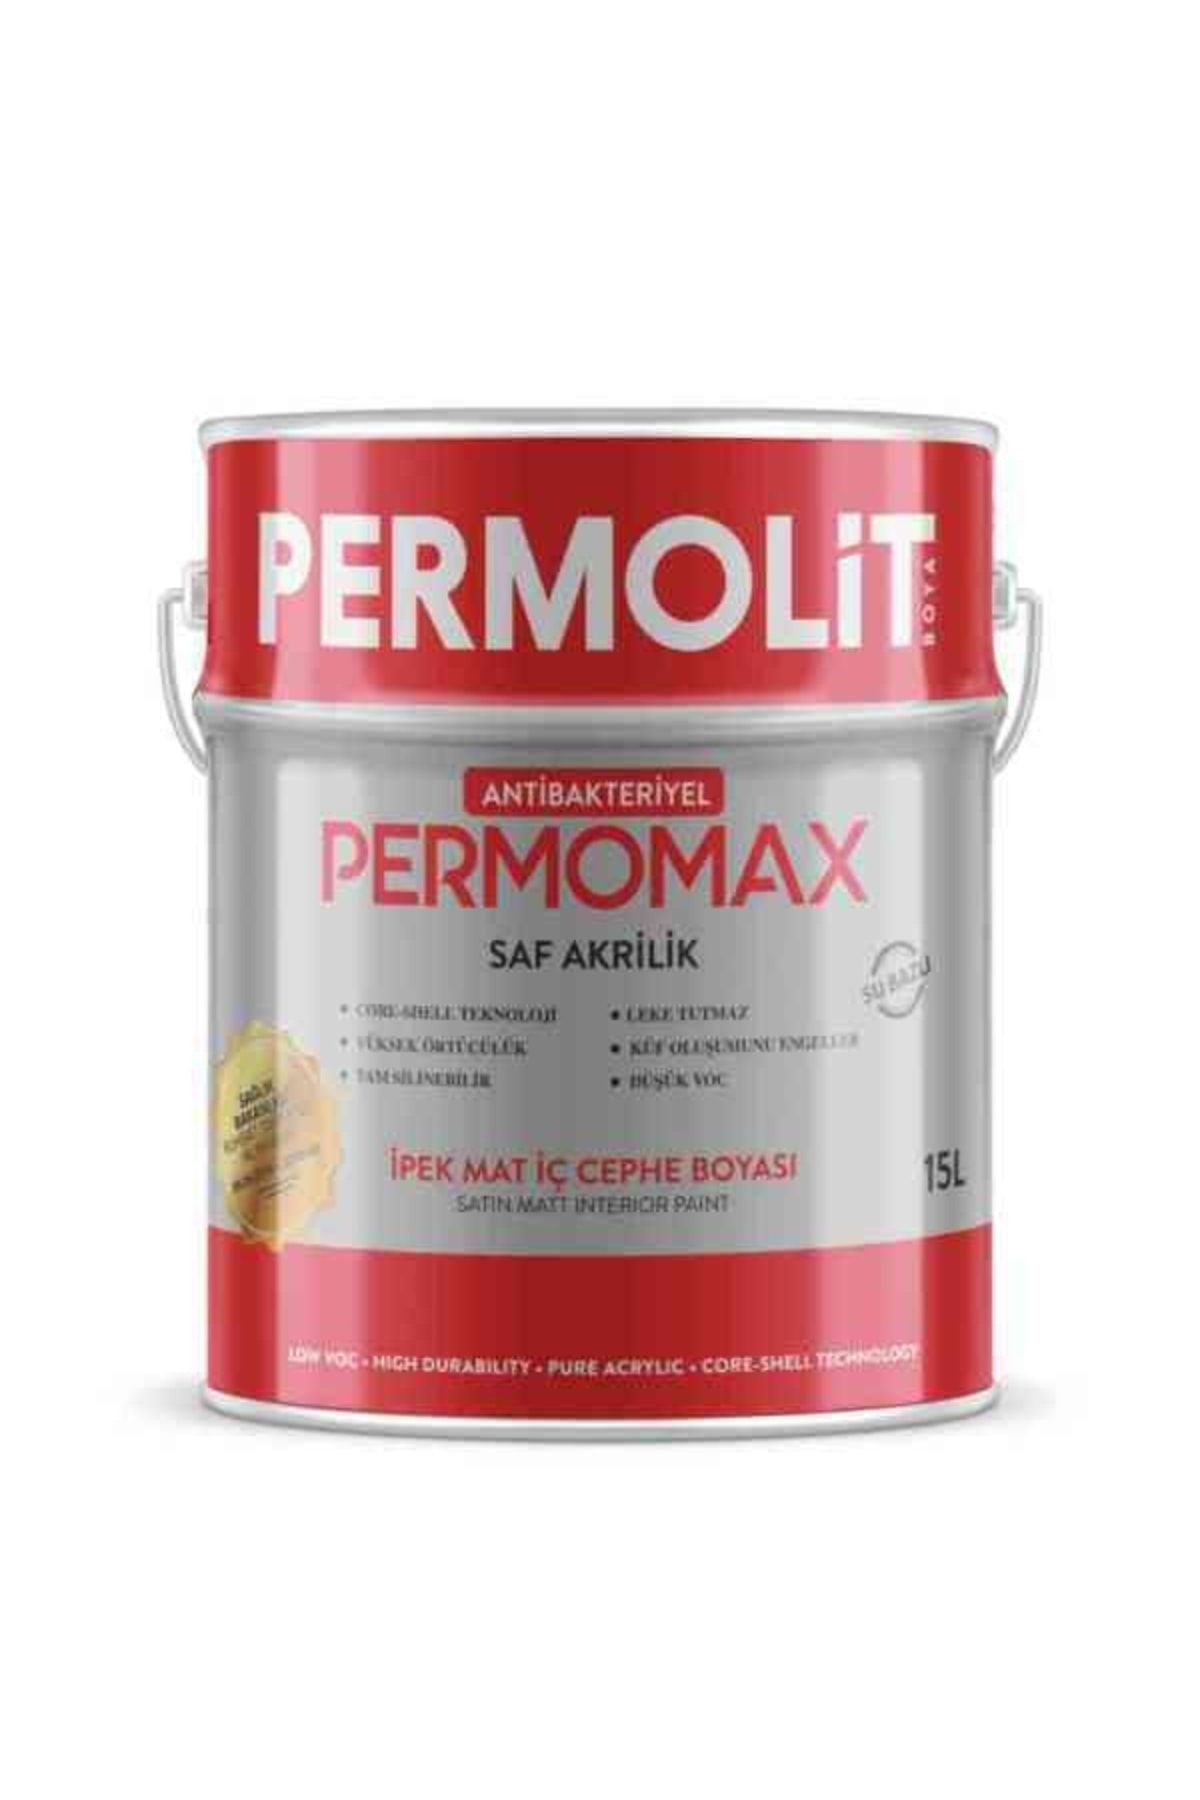 Permolit Permomax Antibakteriyel Ipek Mat Iç Cephe Boyası 15 L - Kırık Beyaz